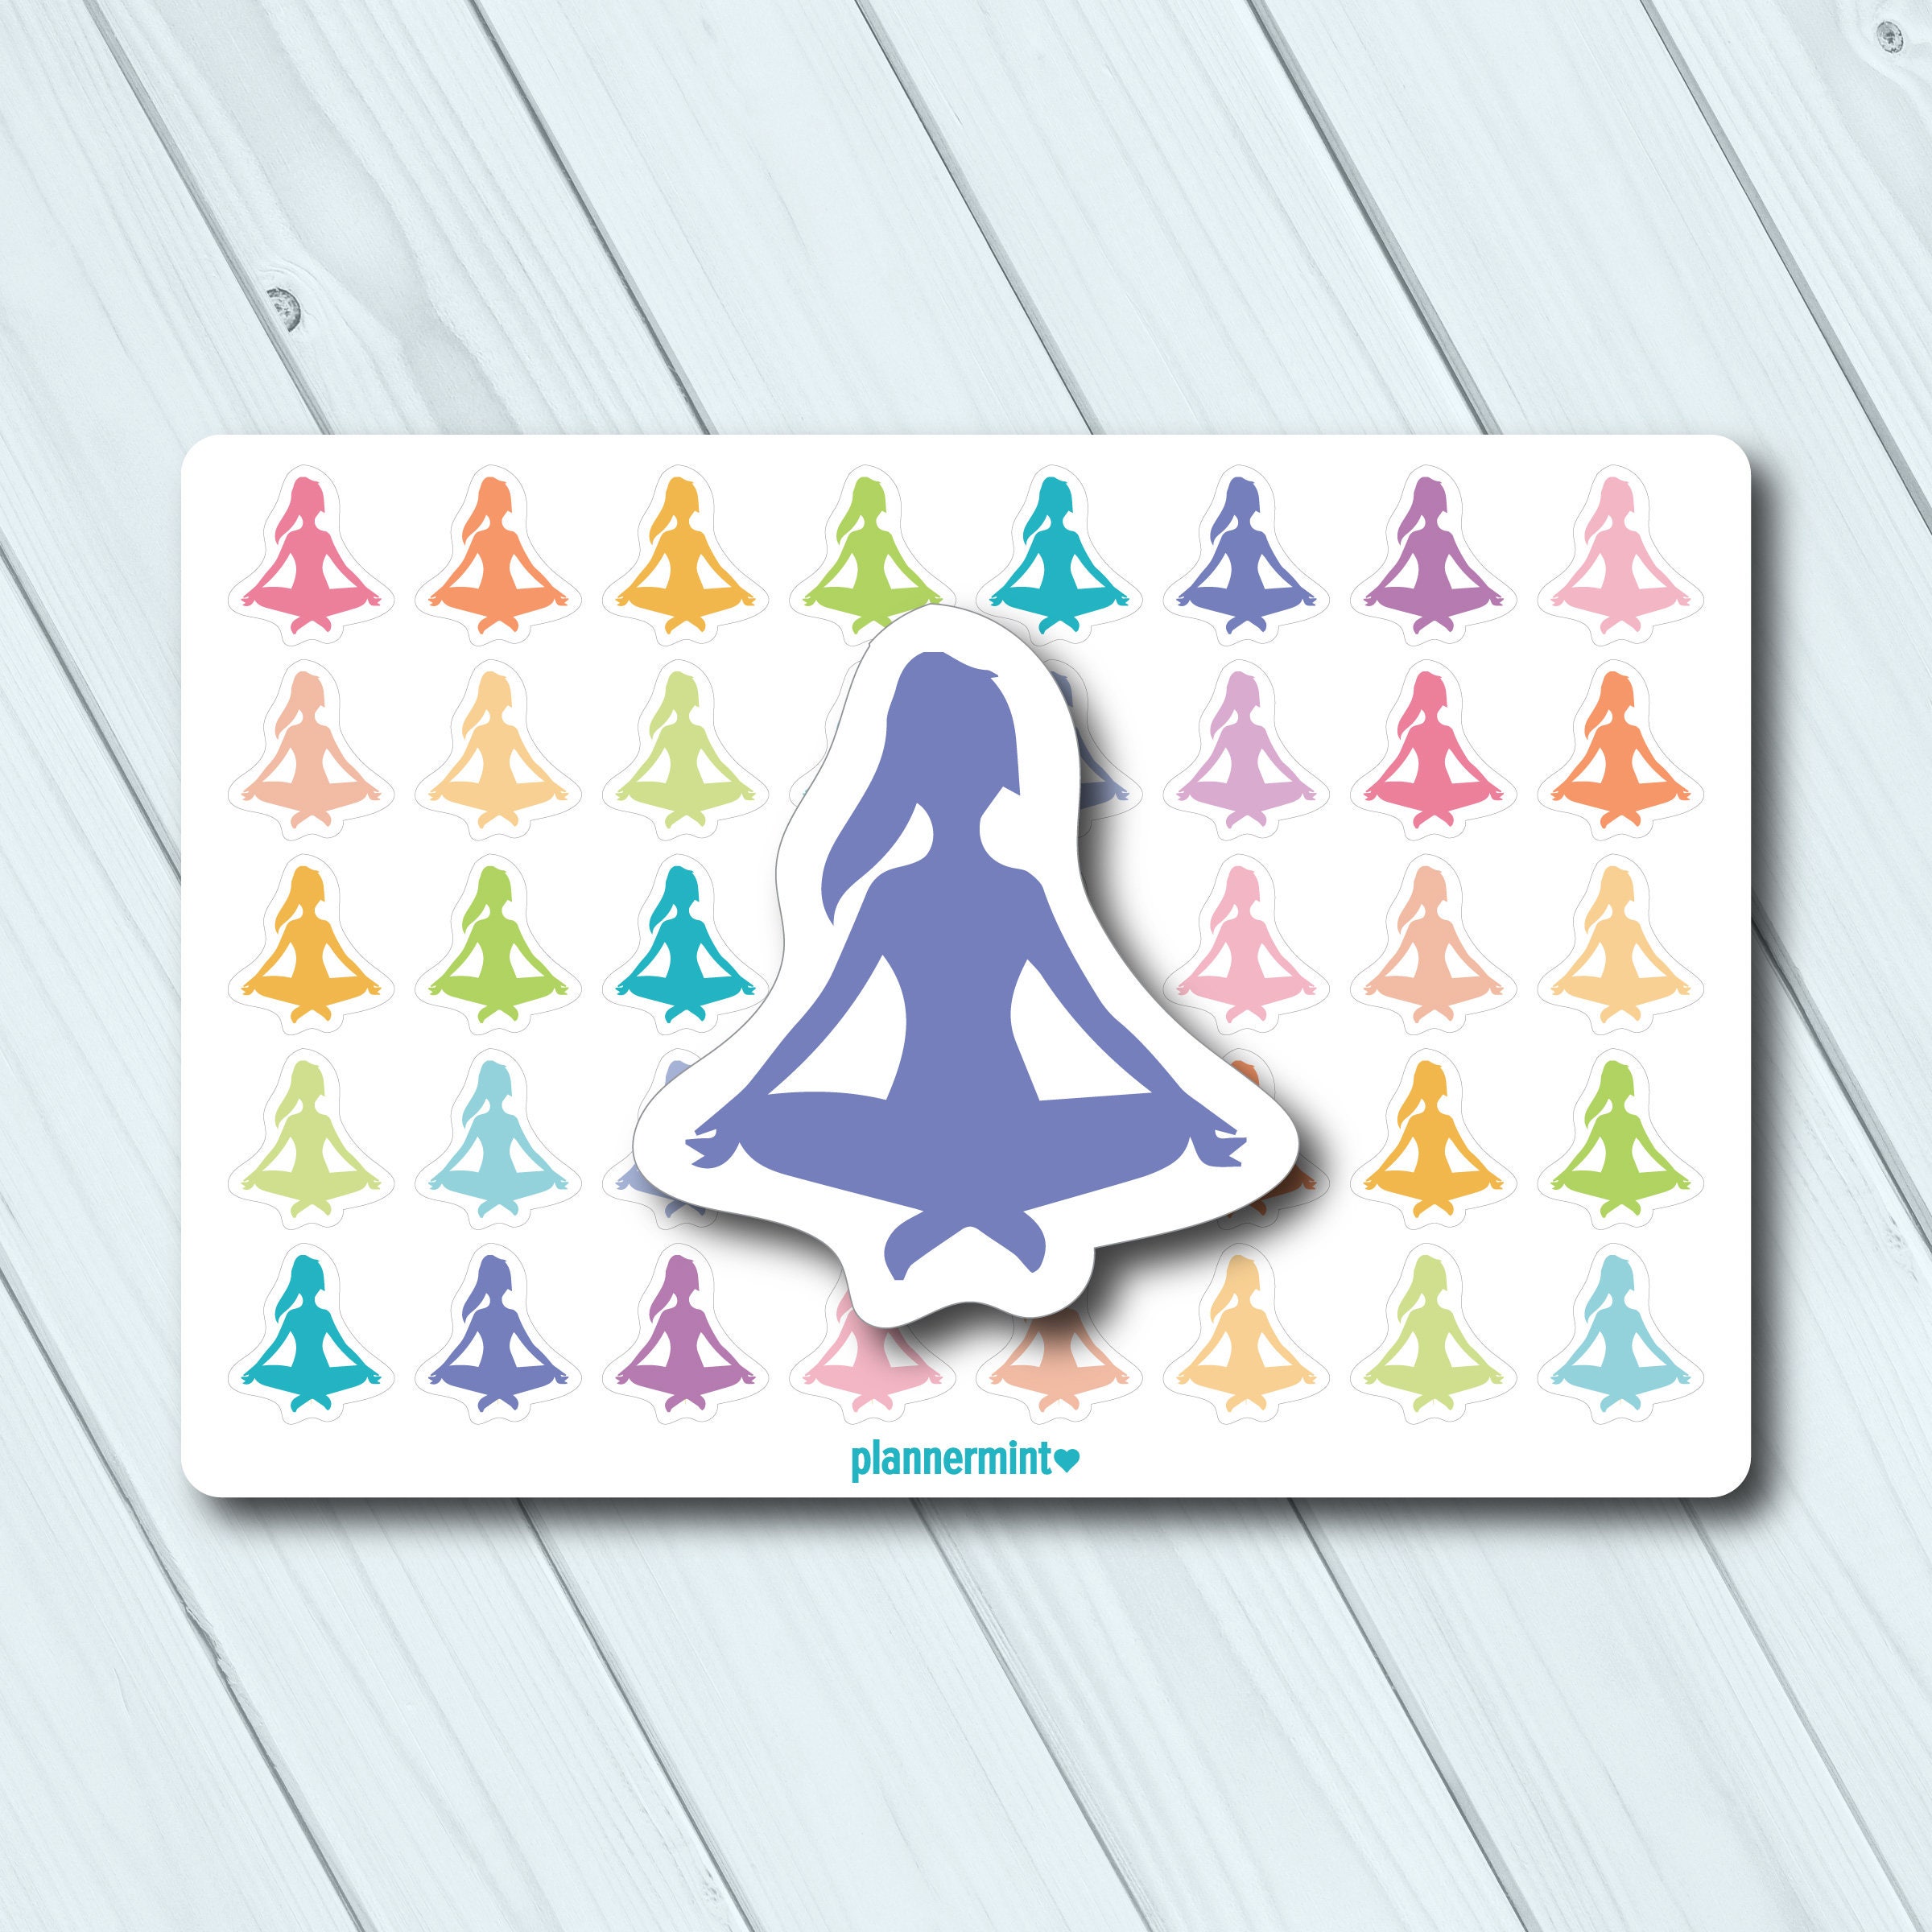 Yoga Sticker Pack - Small Bumper & Mini Stickers | 244, 368, 283, 406, 282,  231, 148, 459